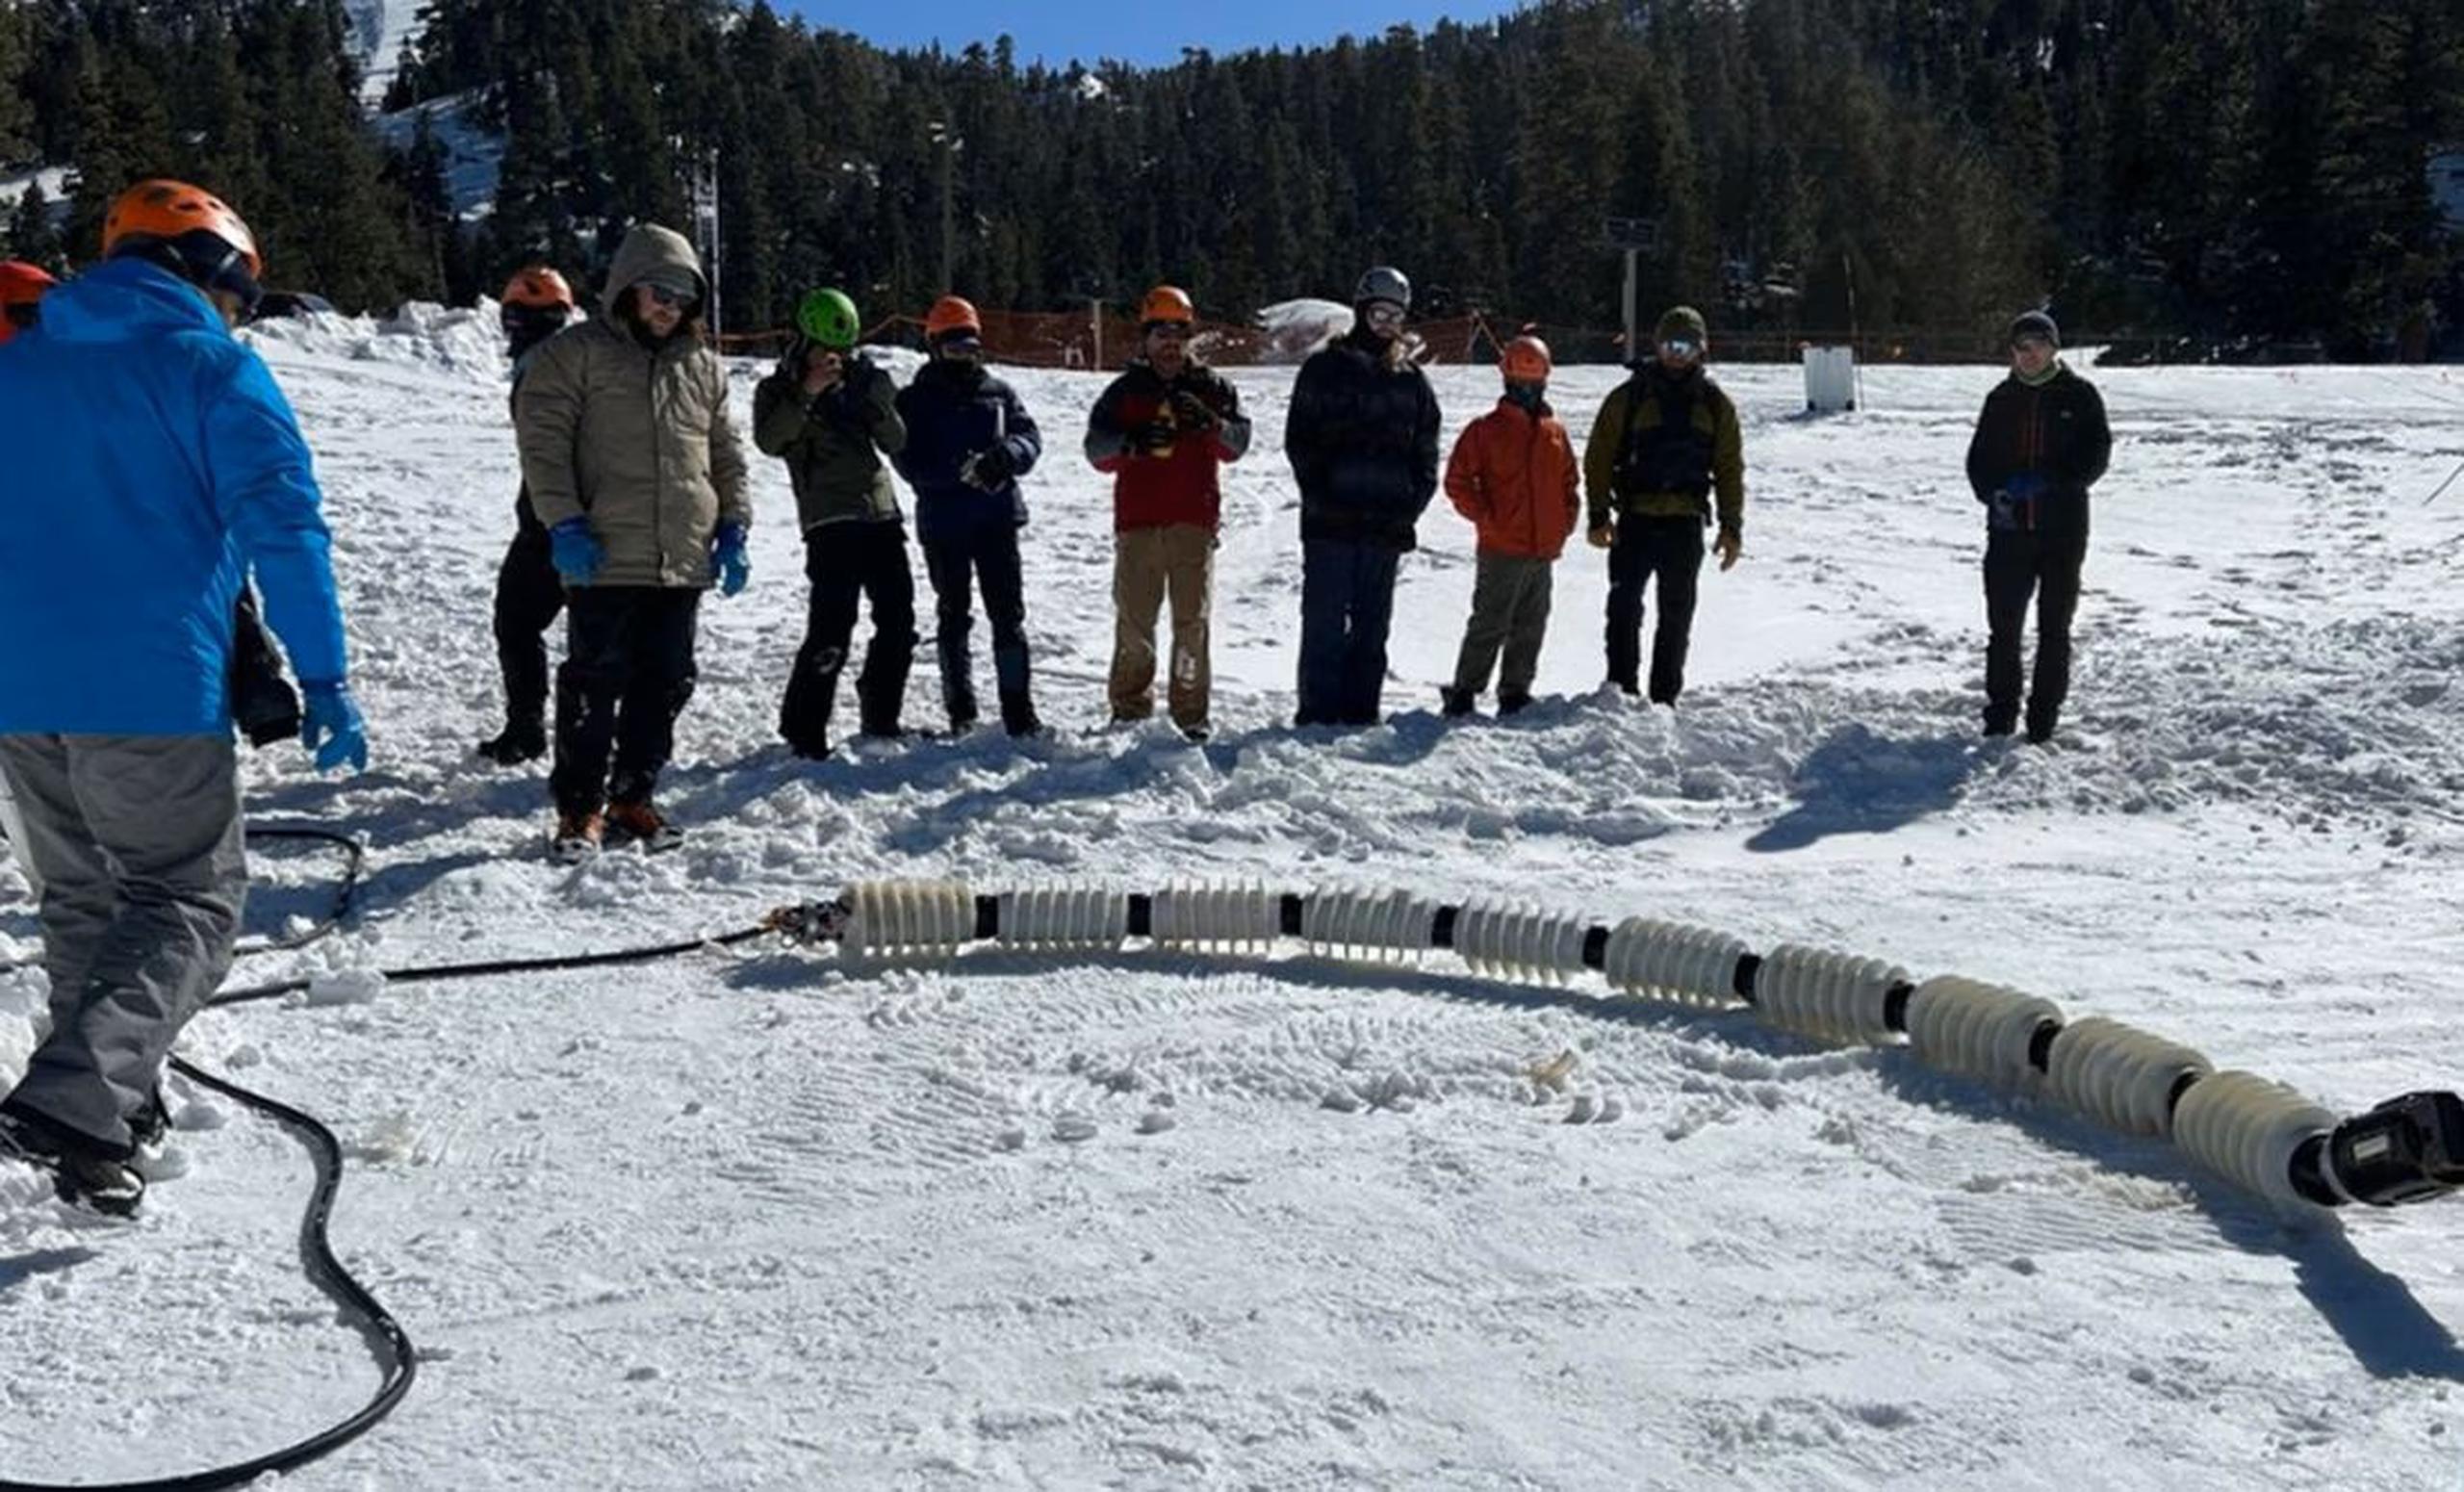 Los miembros del equipo de JPL prueban un robot serpiente llamado EELS en una estación de esquí en las montañas del sur de California en febrero. (NASA/JPL-CALTECH)